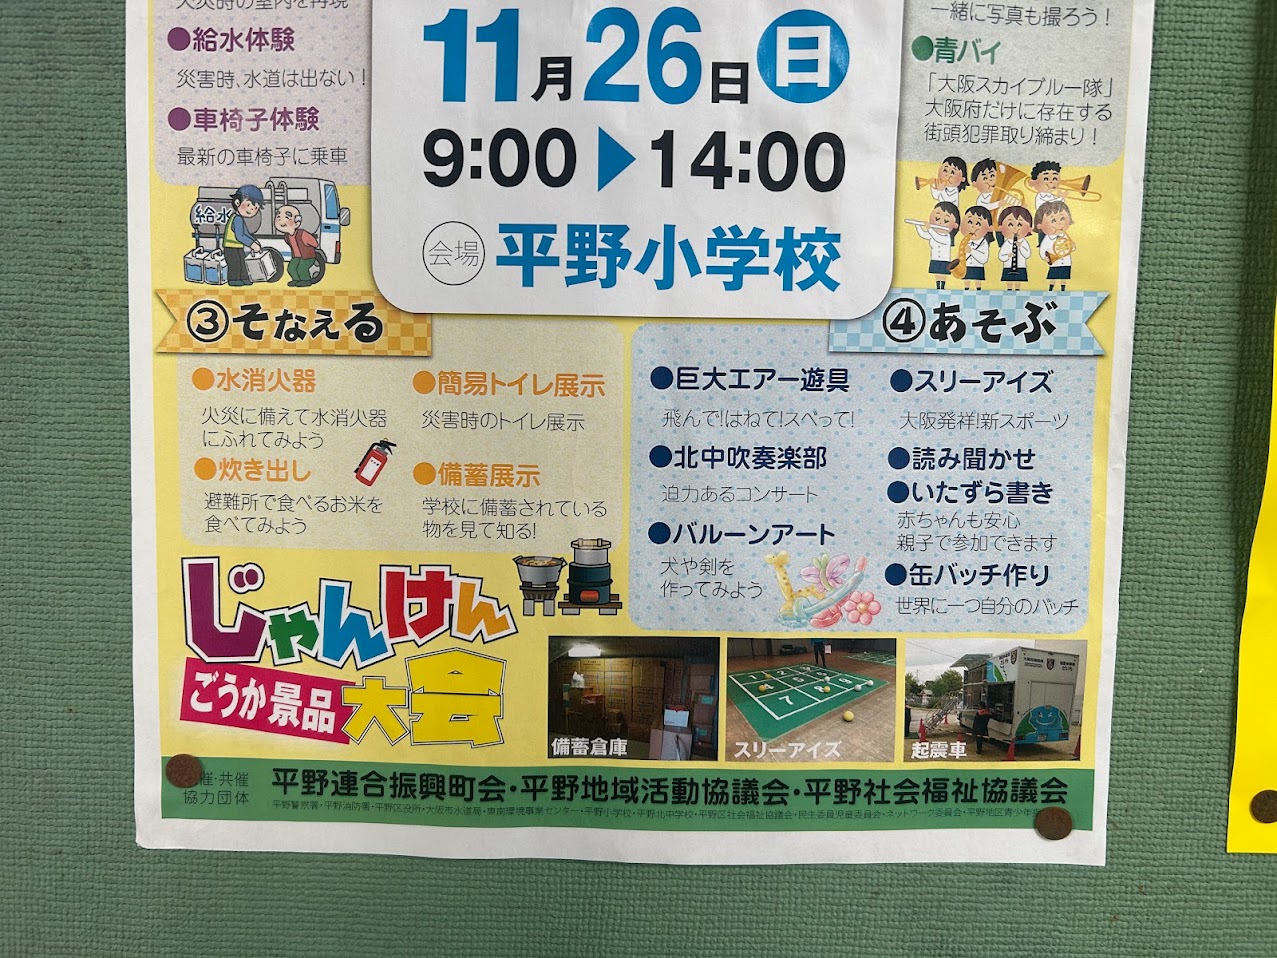 2023防災フェスティバルin平野お知らせ3

